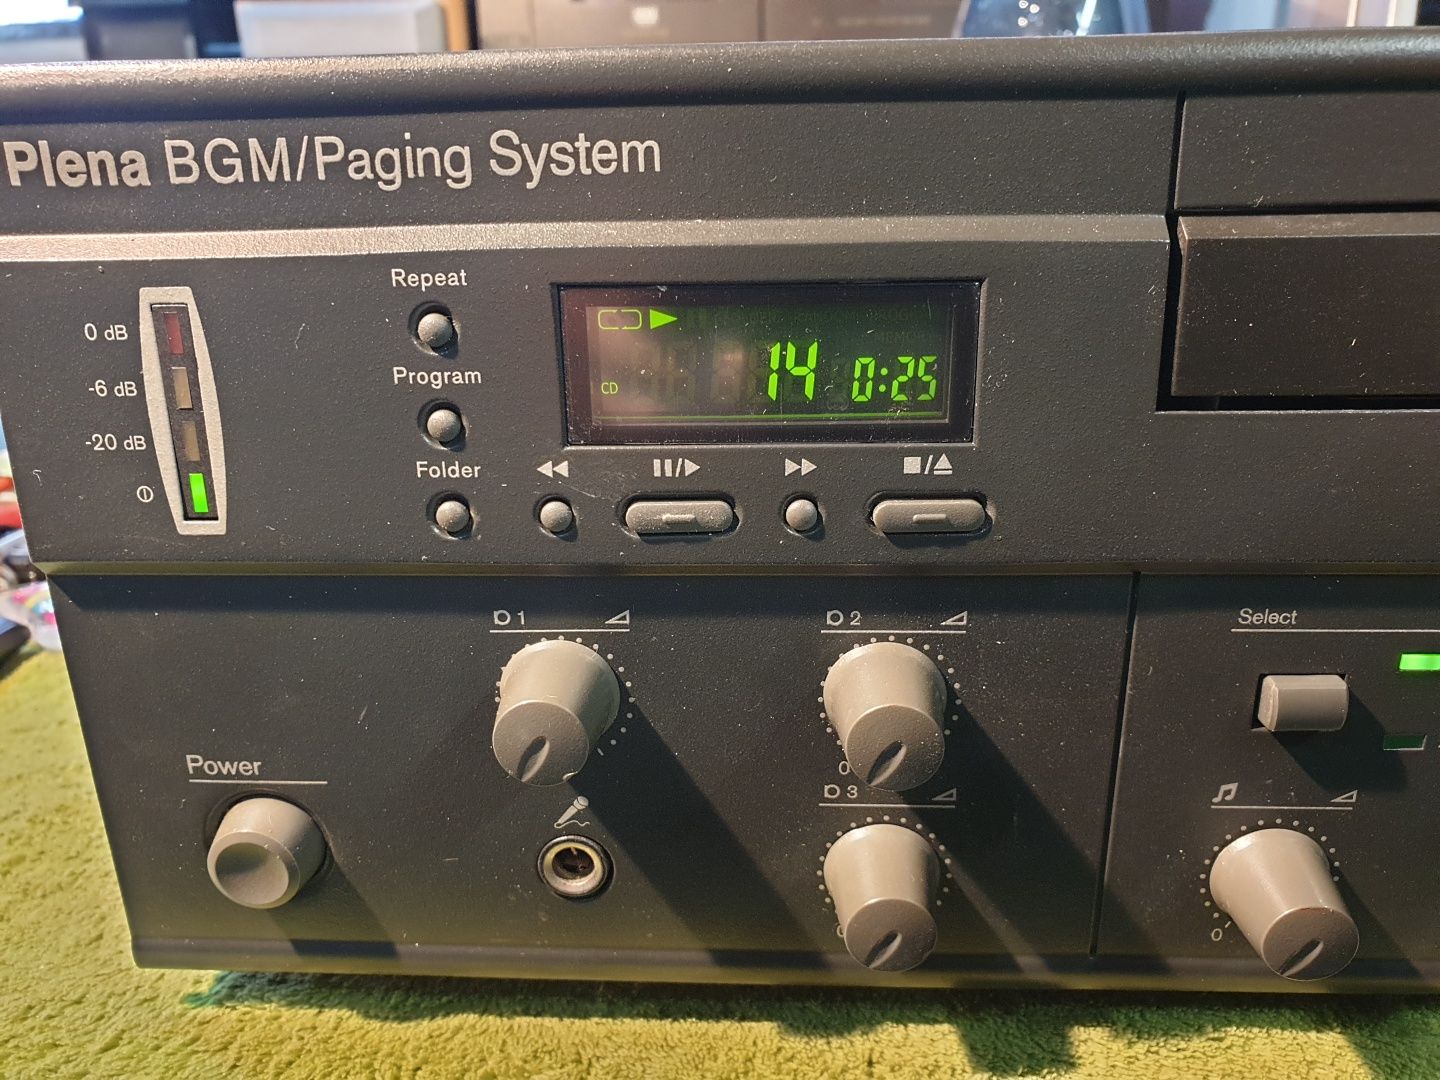 BOSCH PLENA BMG Paging System CD/FM nagłośnienie wielkopowierzchniowe.